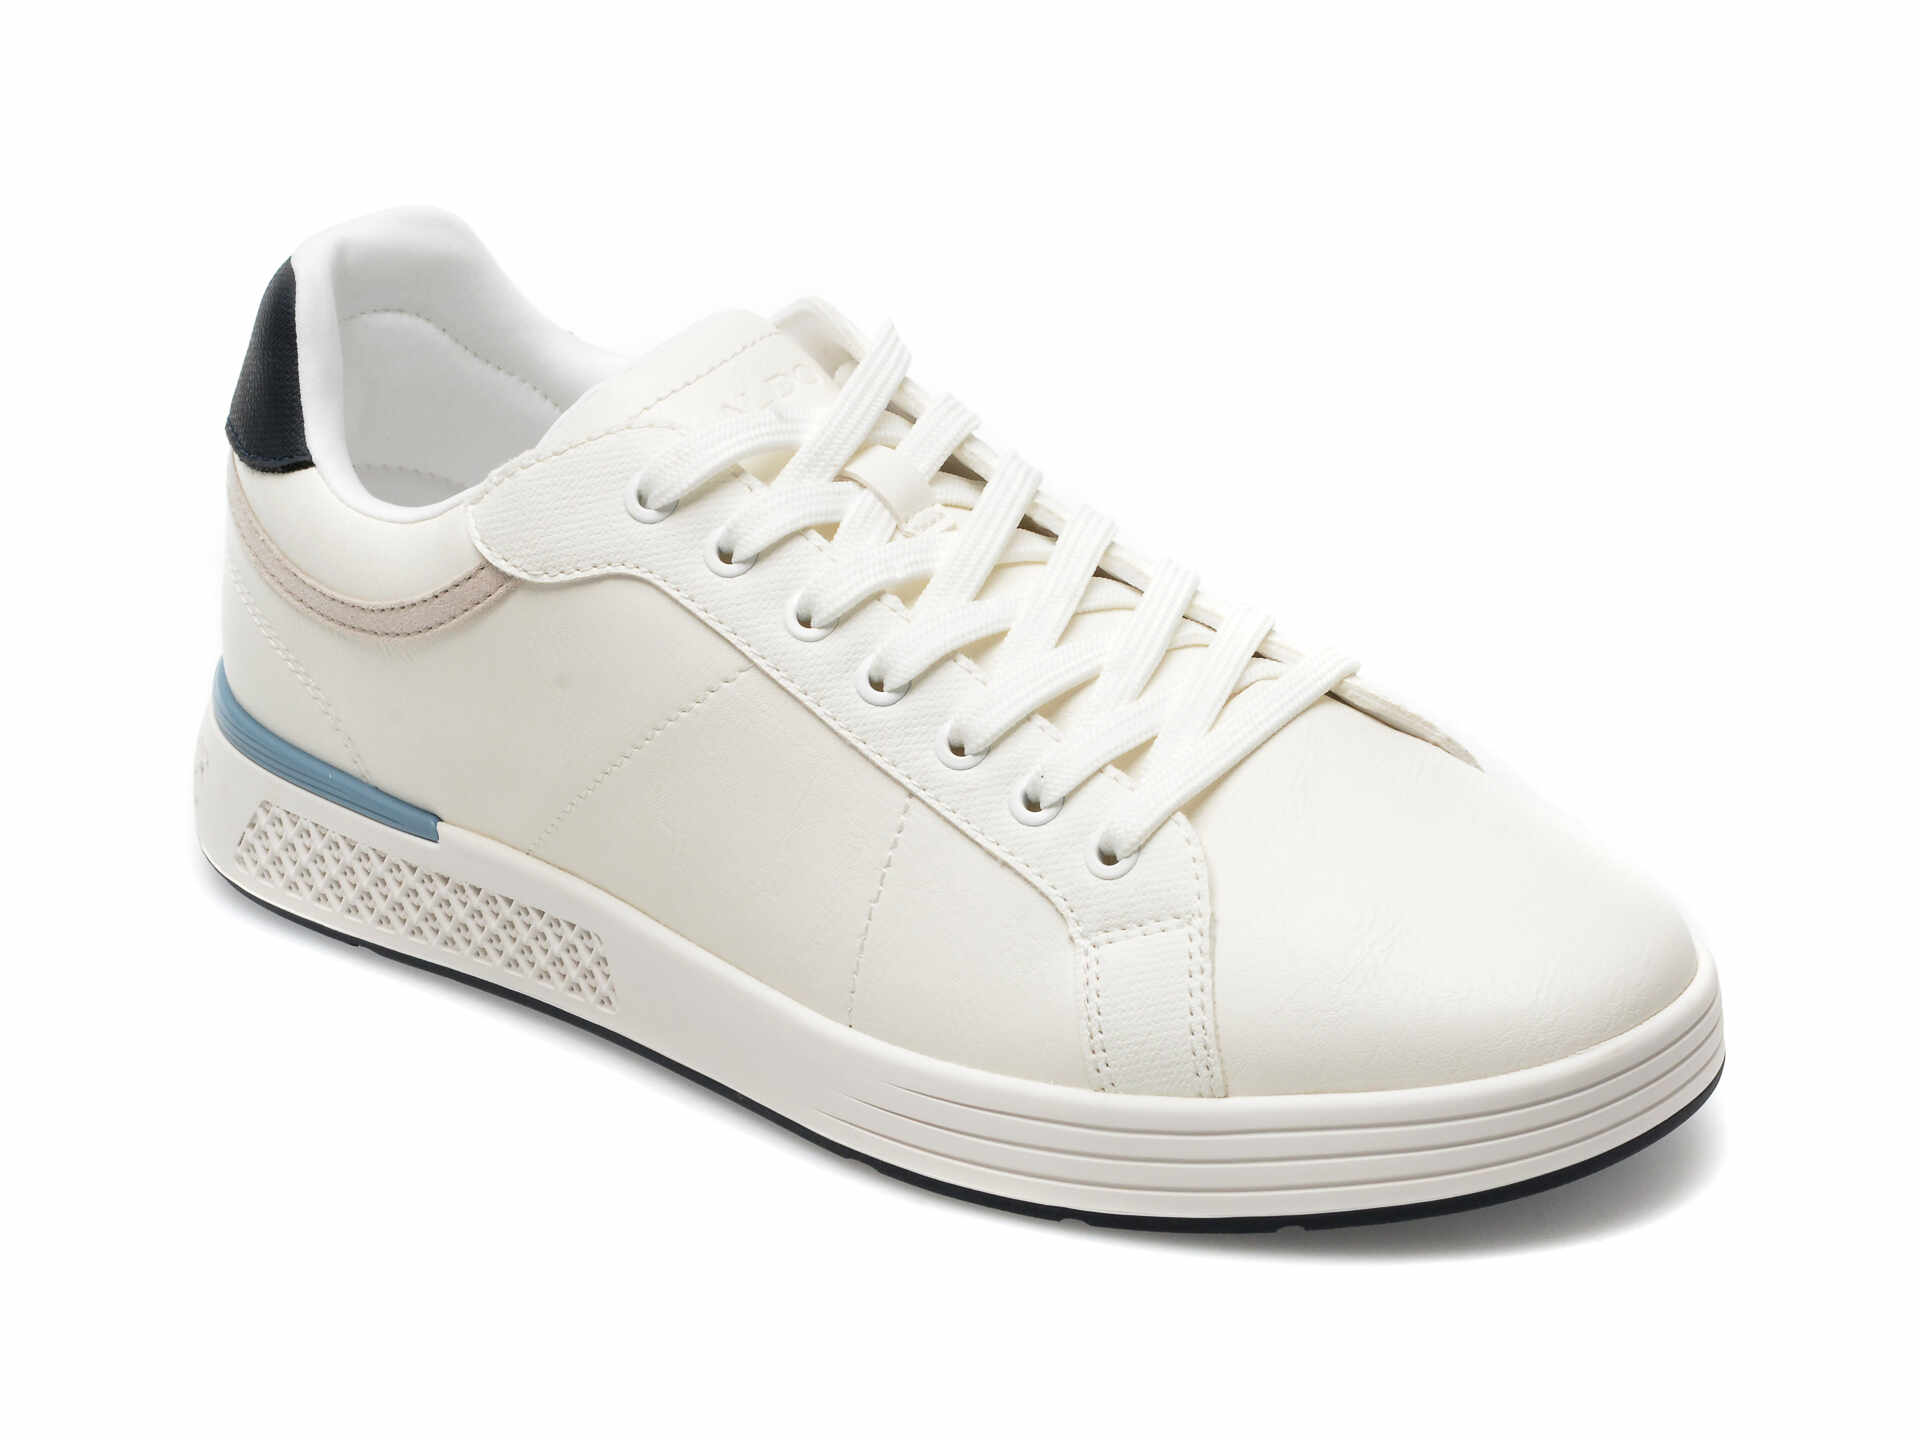 Pantofi ALDO albi, POLYSPEC100, din piele ecologica